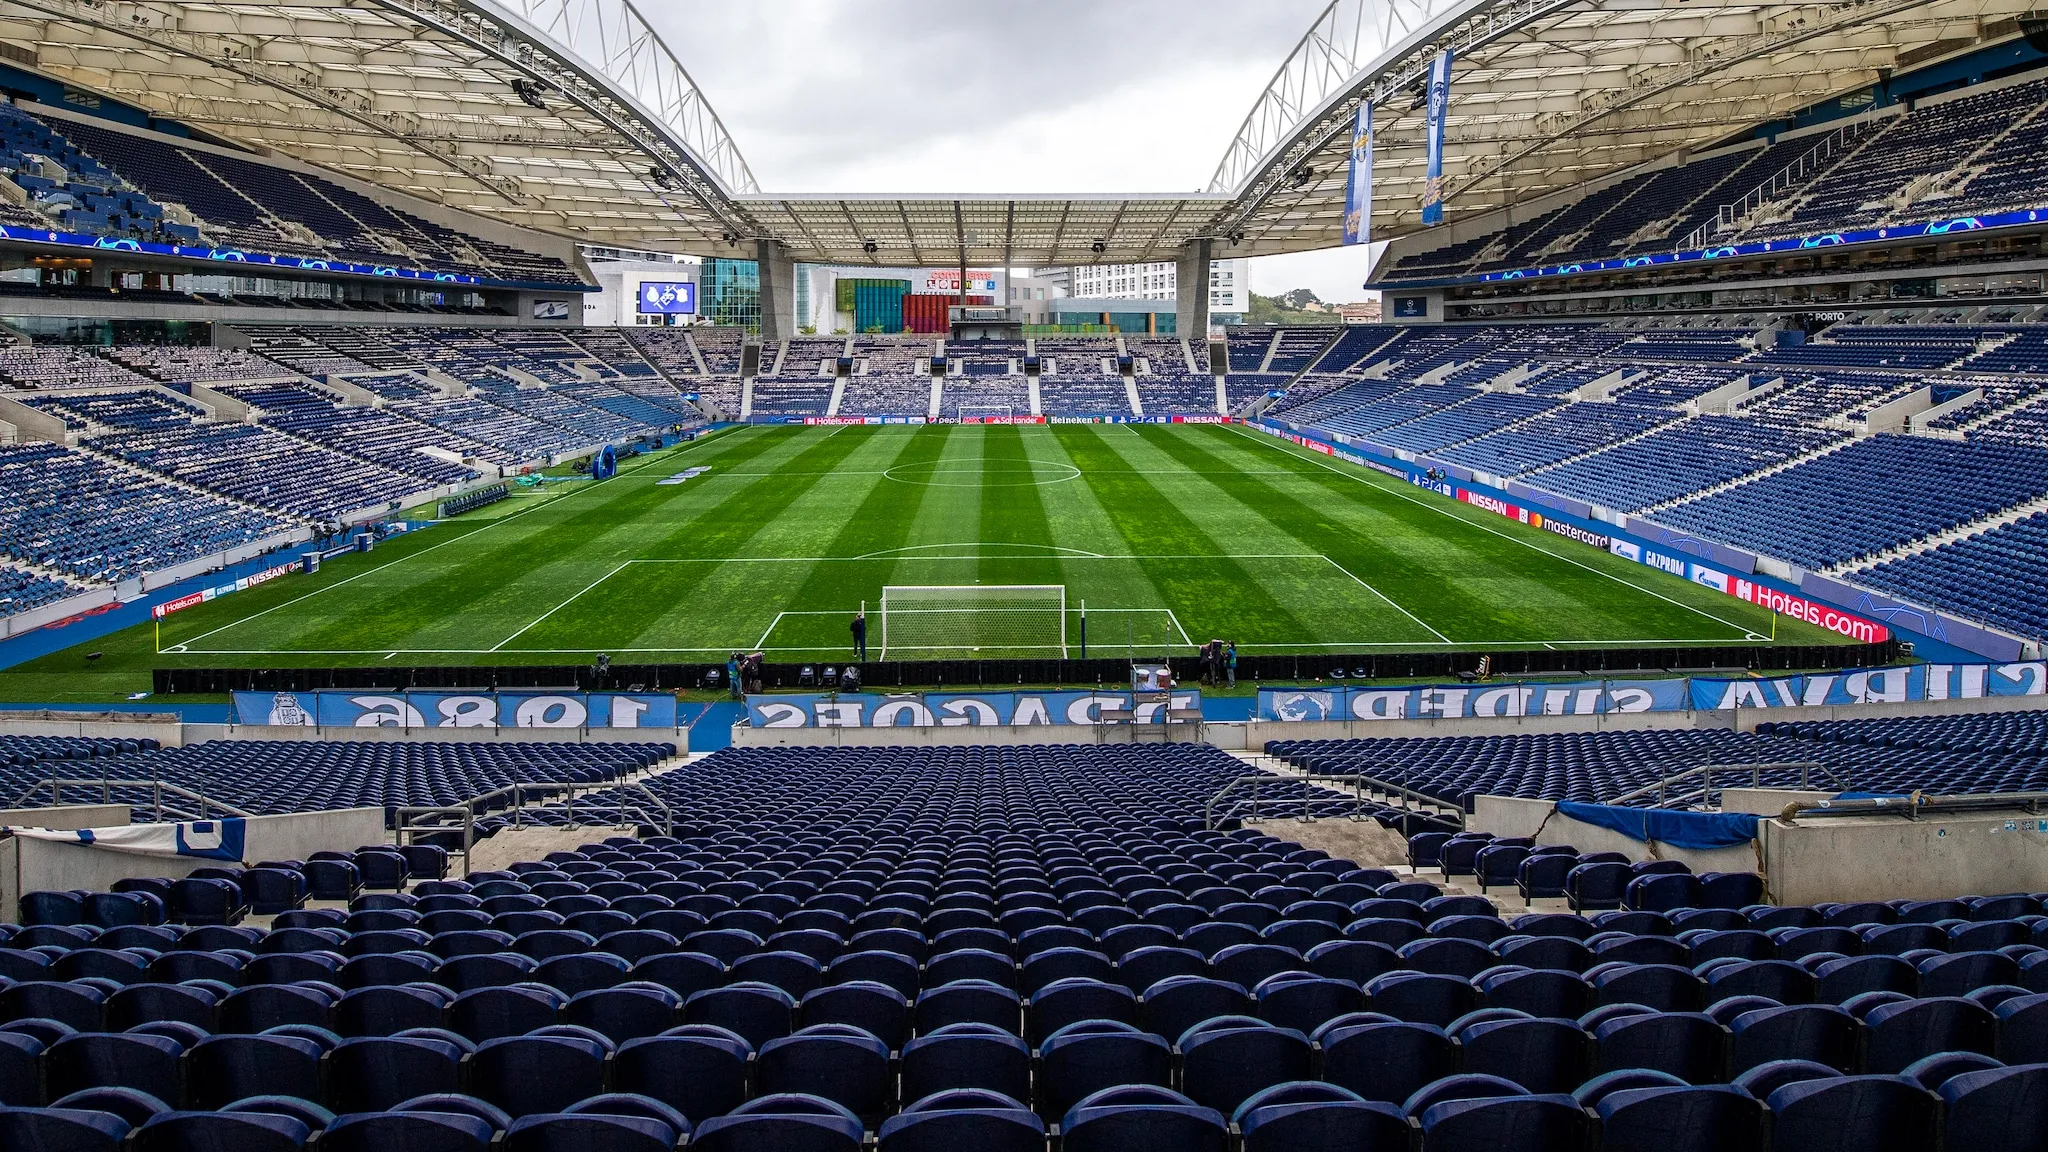 Sân vận động Estadio do Dragao, nơi diễn ra chung kết Champions League 2021 giữa Man City và Chelsea vào ngày 30/5/2021.